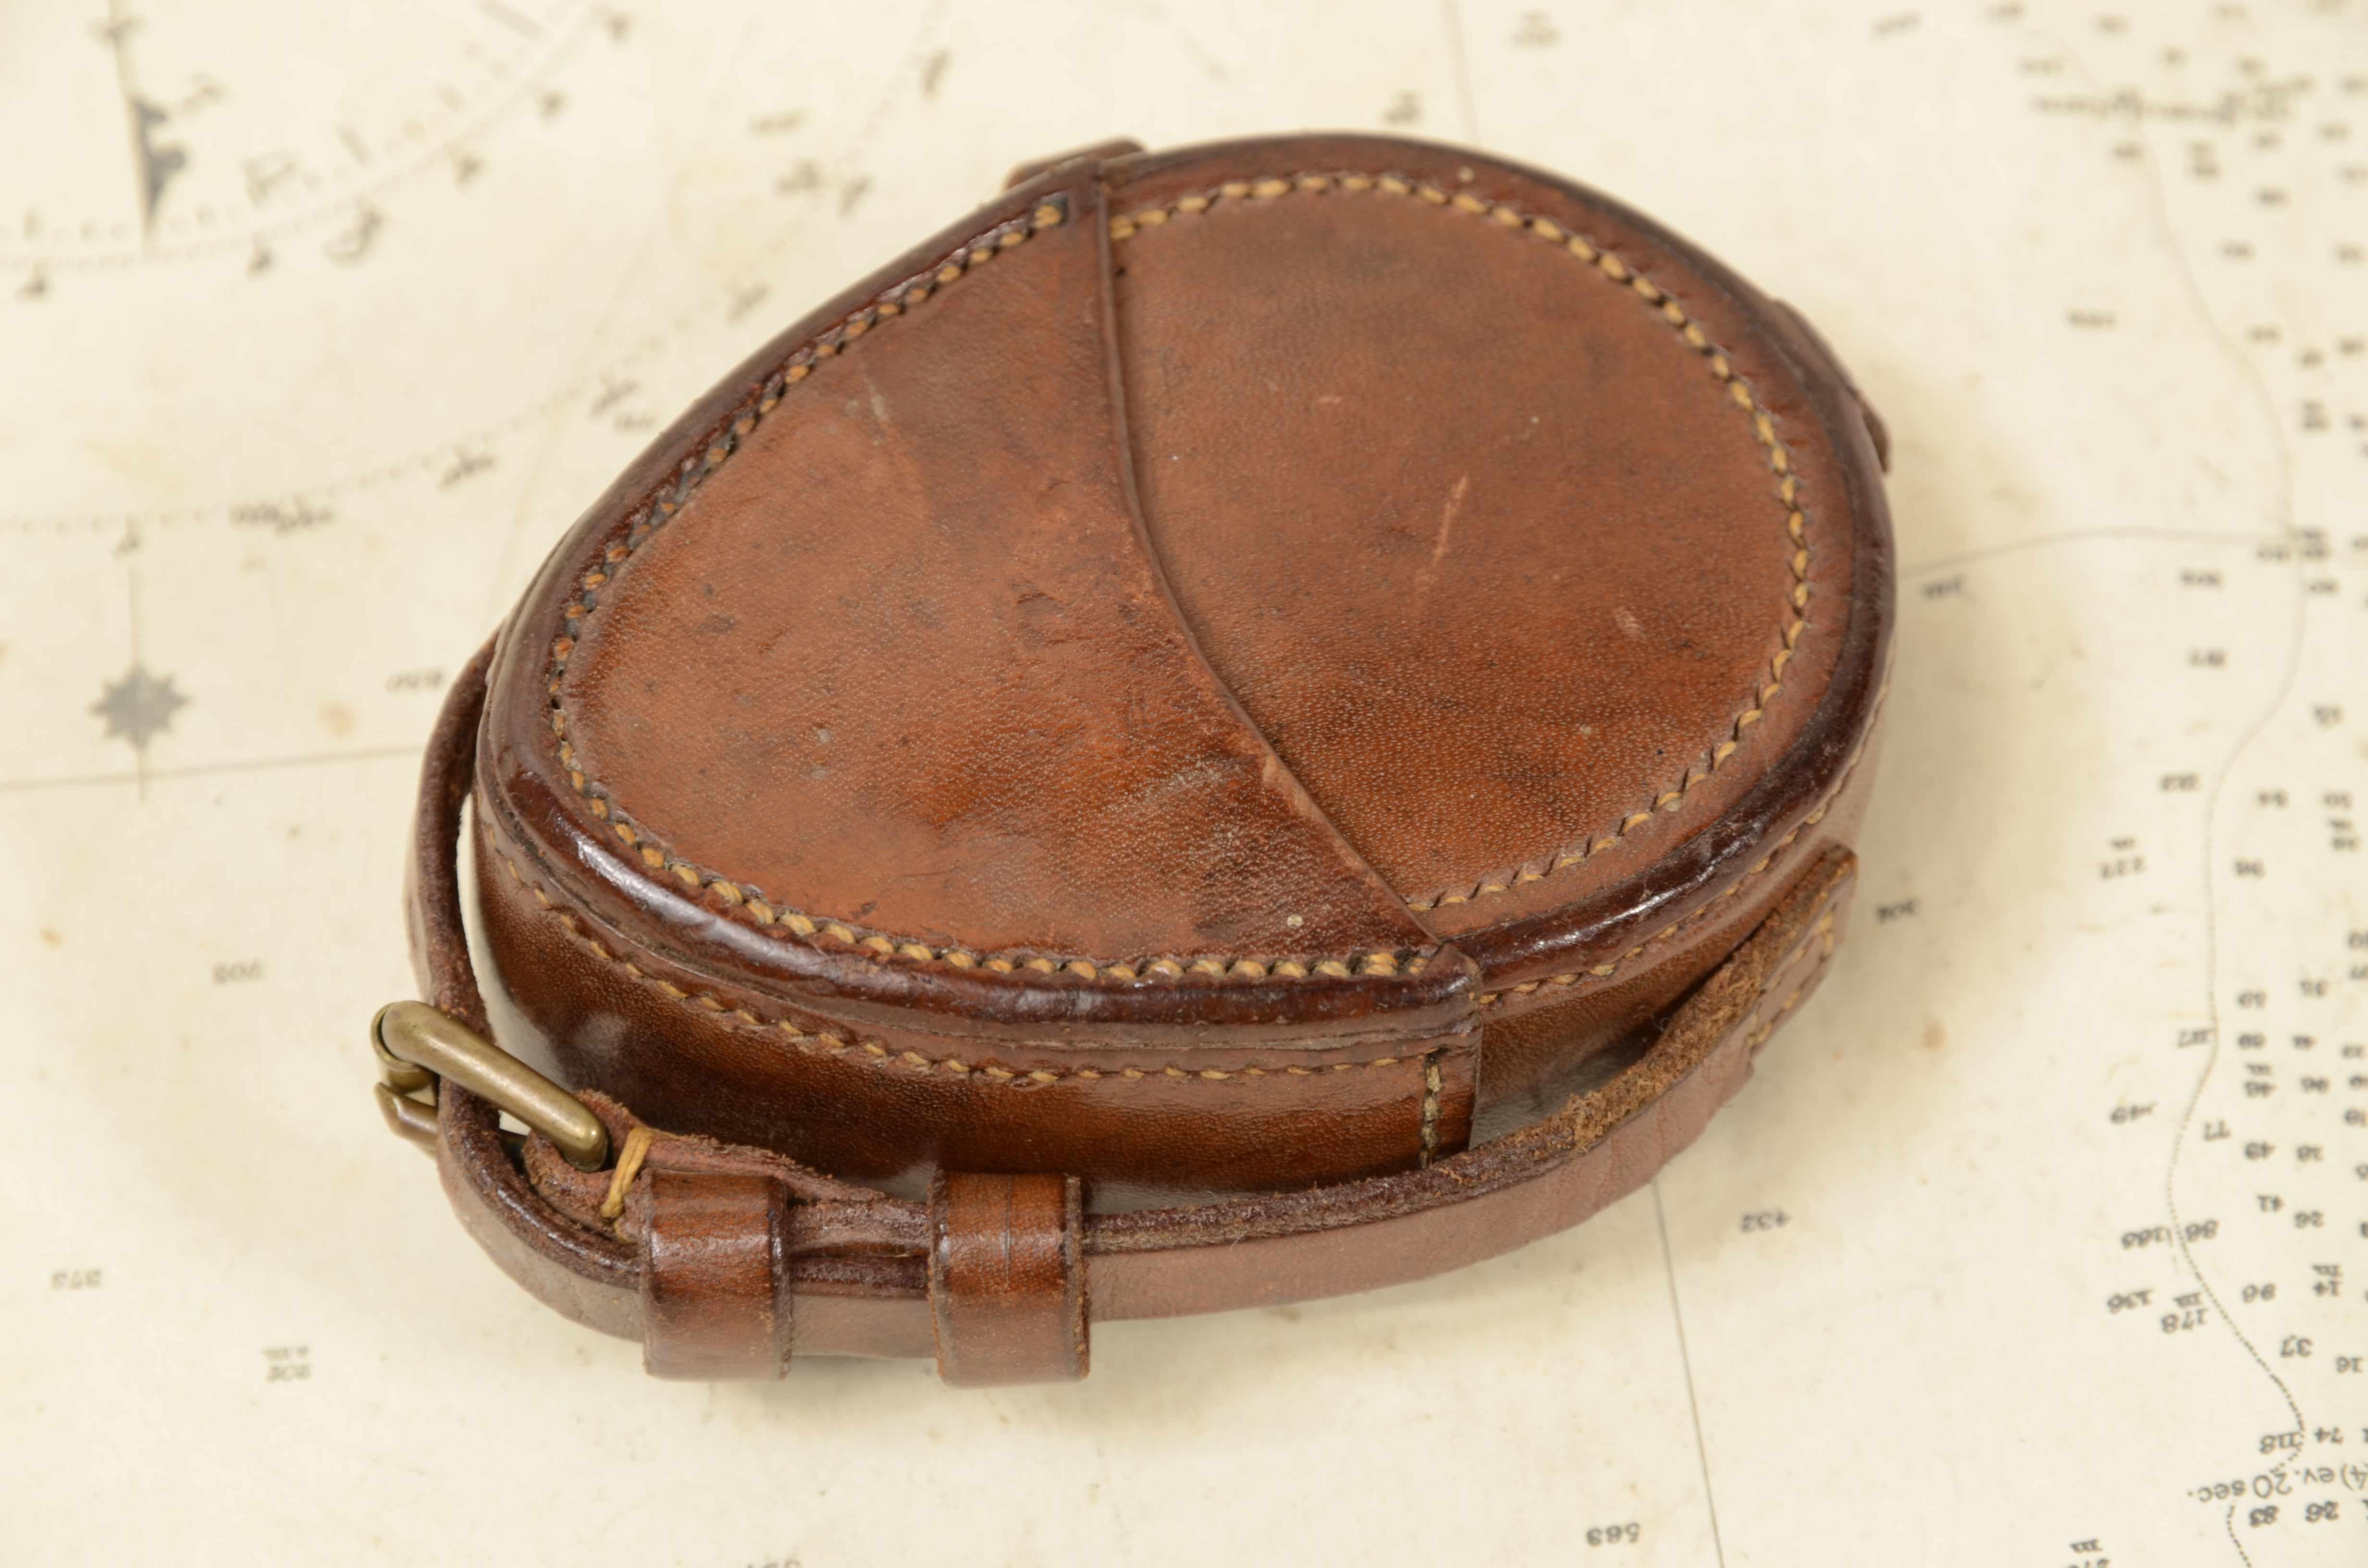 Bussola nautica da tasca in ottone del 1918  firmata S. Mordan & Co n. 6248. 8